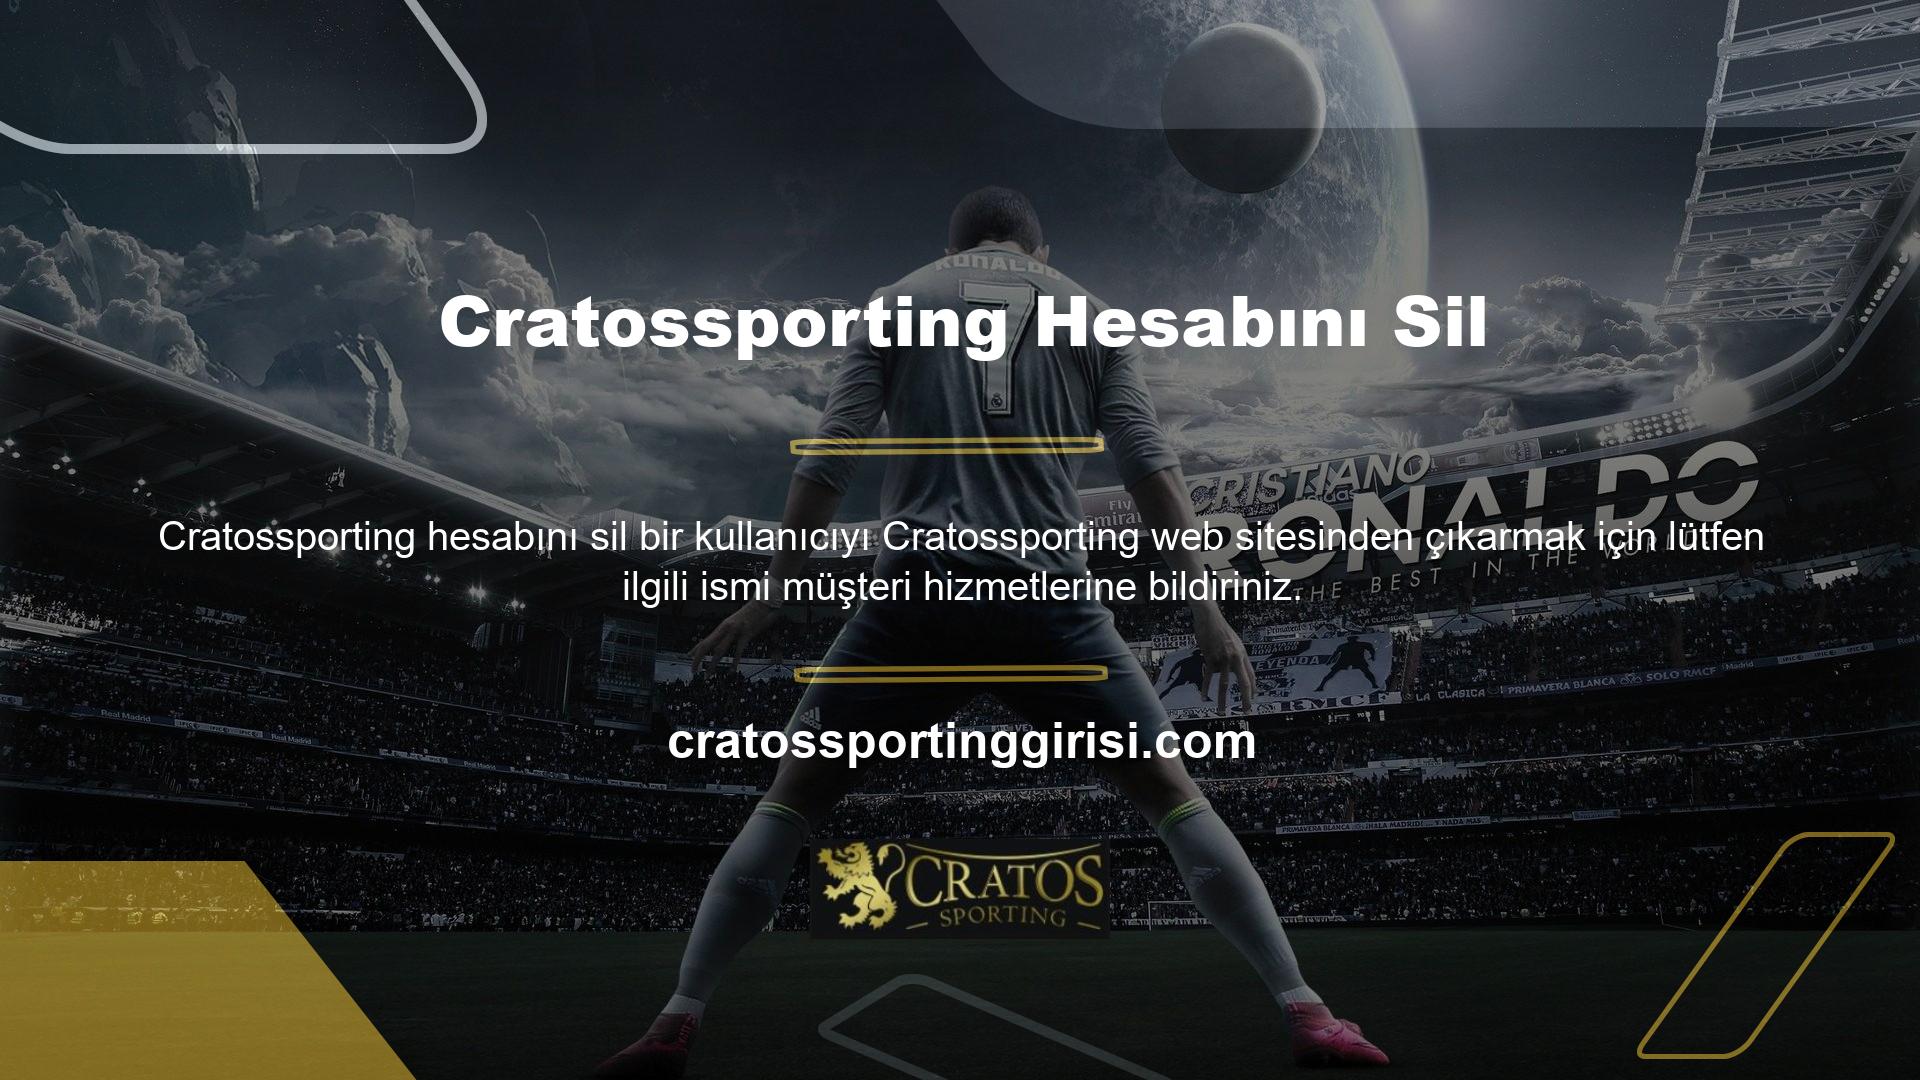 Cratossporting müşteri hizmetleriyle iletişime geçmek için Cratossporting web sitesini ziyaret edin, web sitesindeki herhangi bir sayfanın sol üst köşesindeki "Canlı Destek" butonuna tıklayın, "Canlı Destekle İletişime Geçin" seçeneğini göreceksiniz